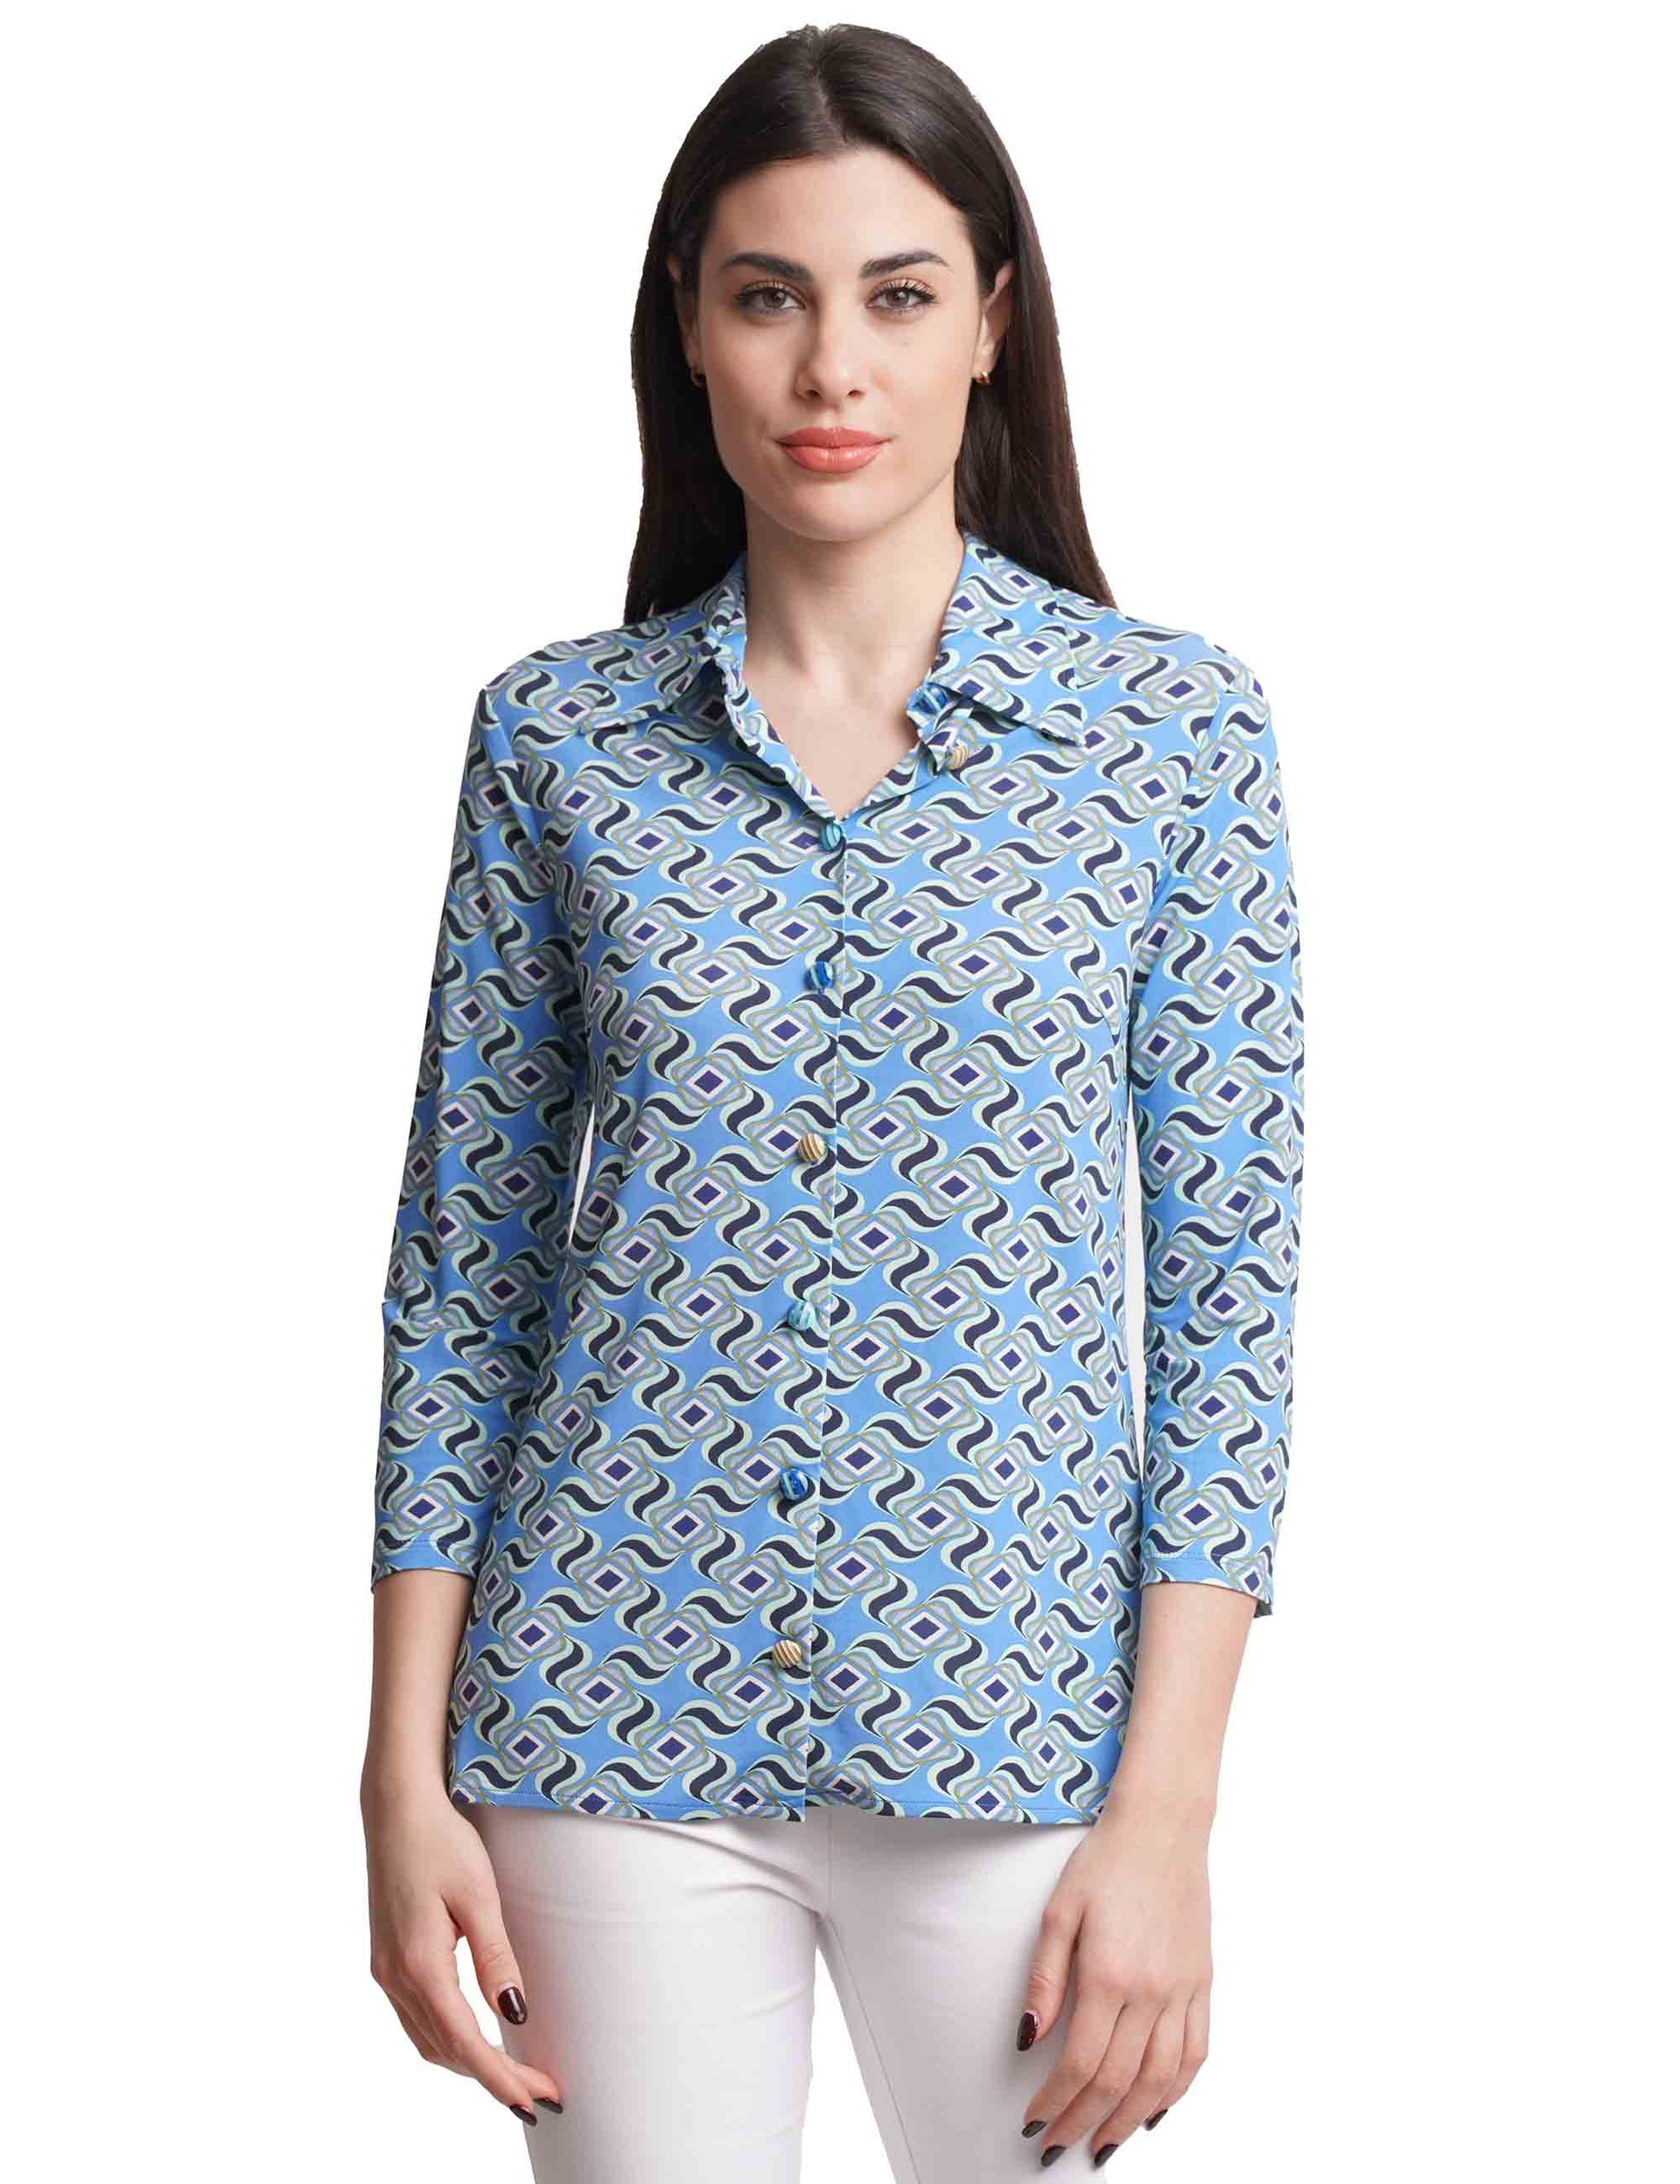 Camicie donna Swirl Print in jersey azzurro con maniche 3/4